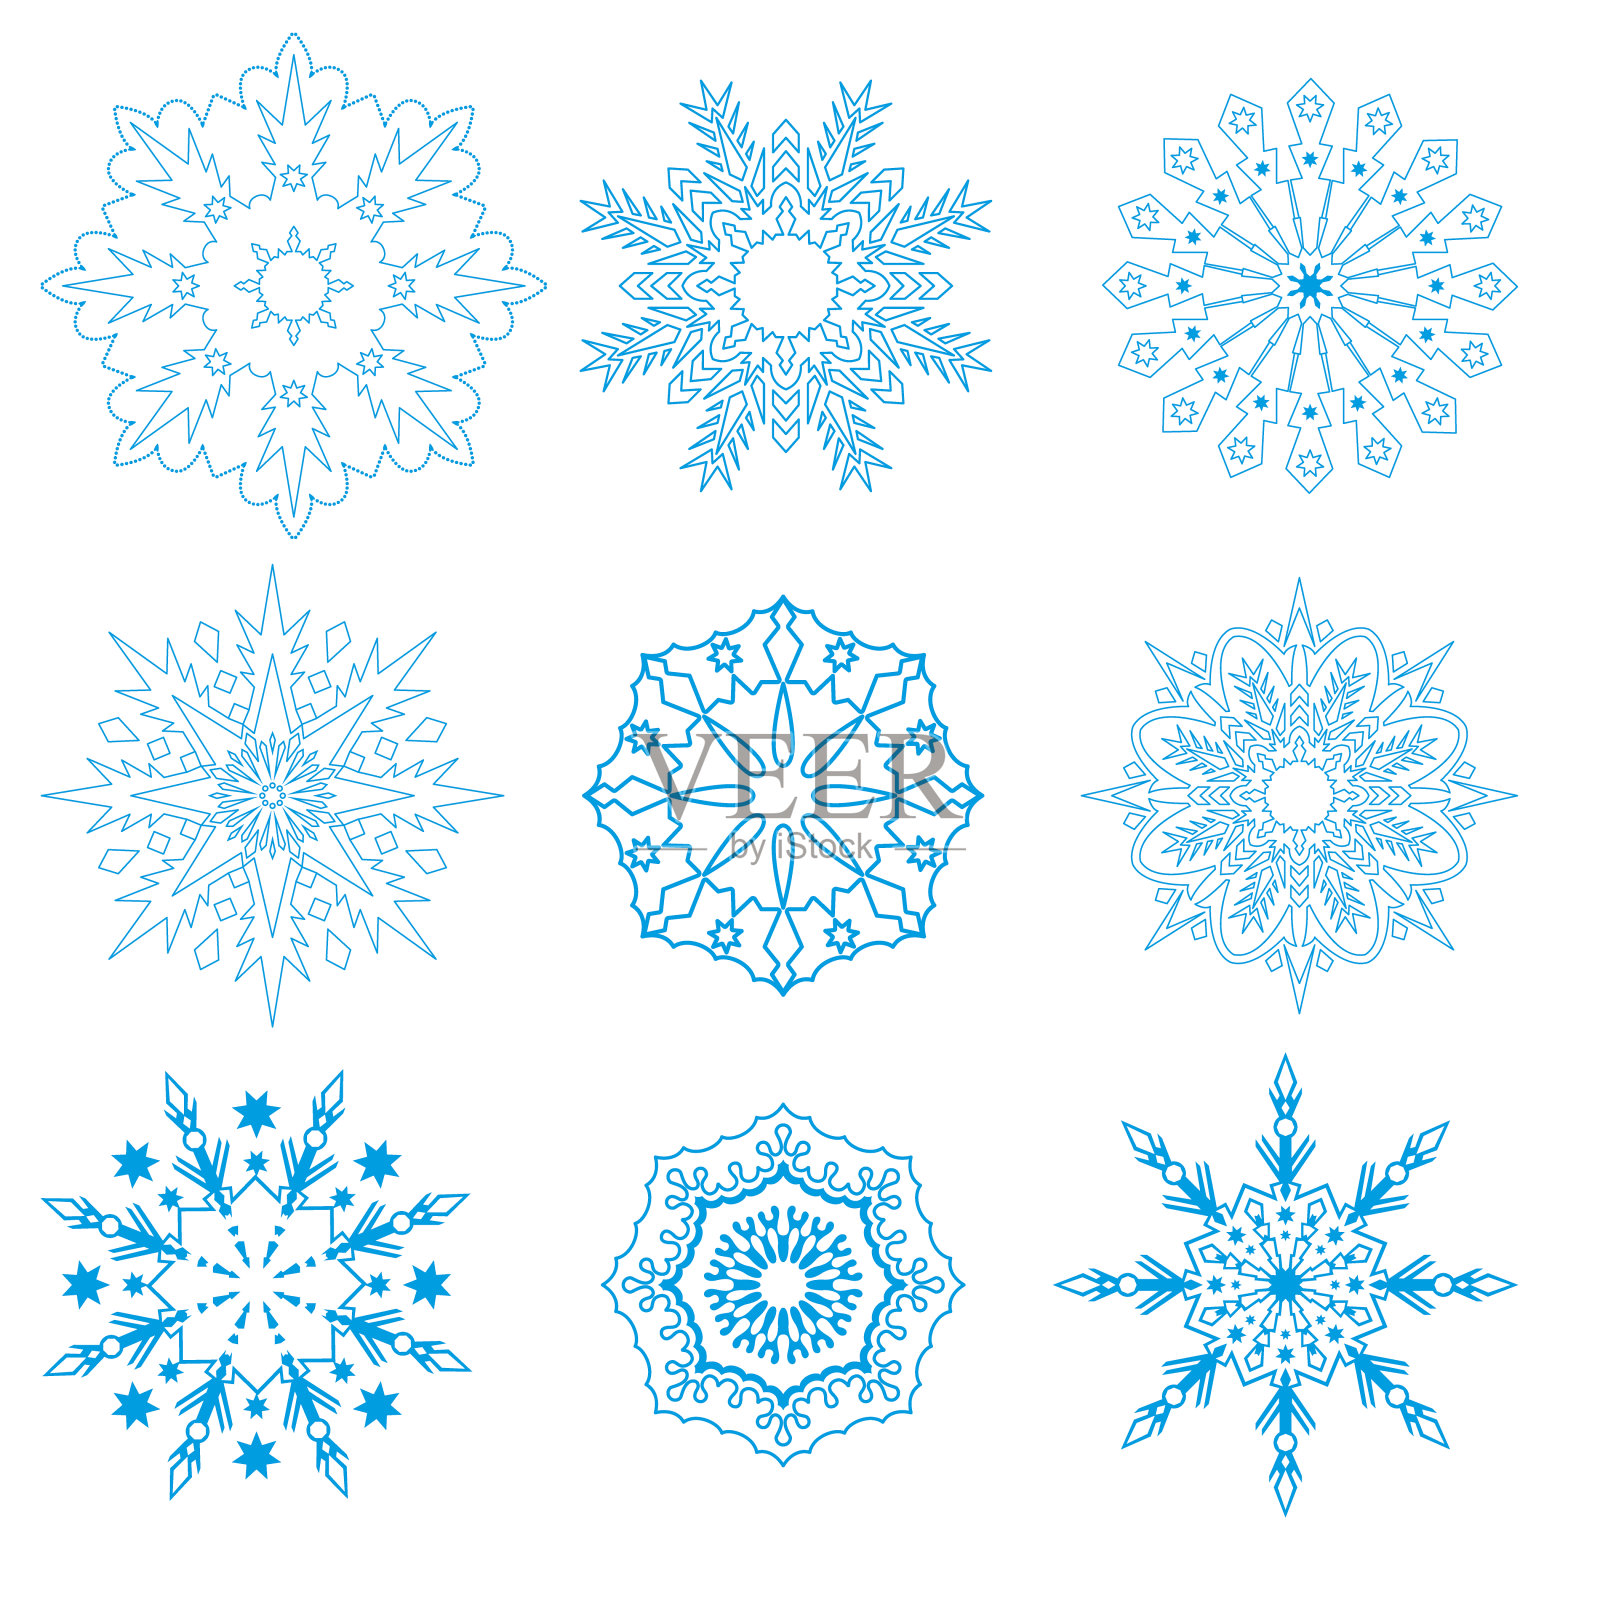 一组不同几何图案的雪花插画图片素材